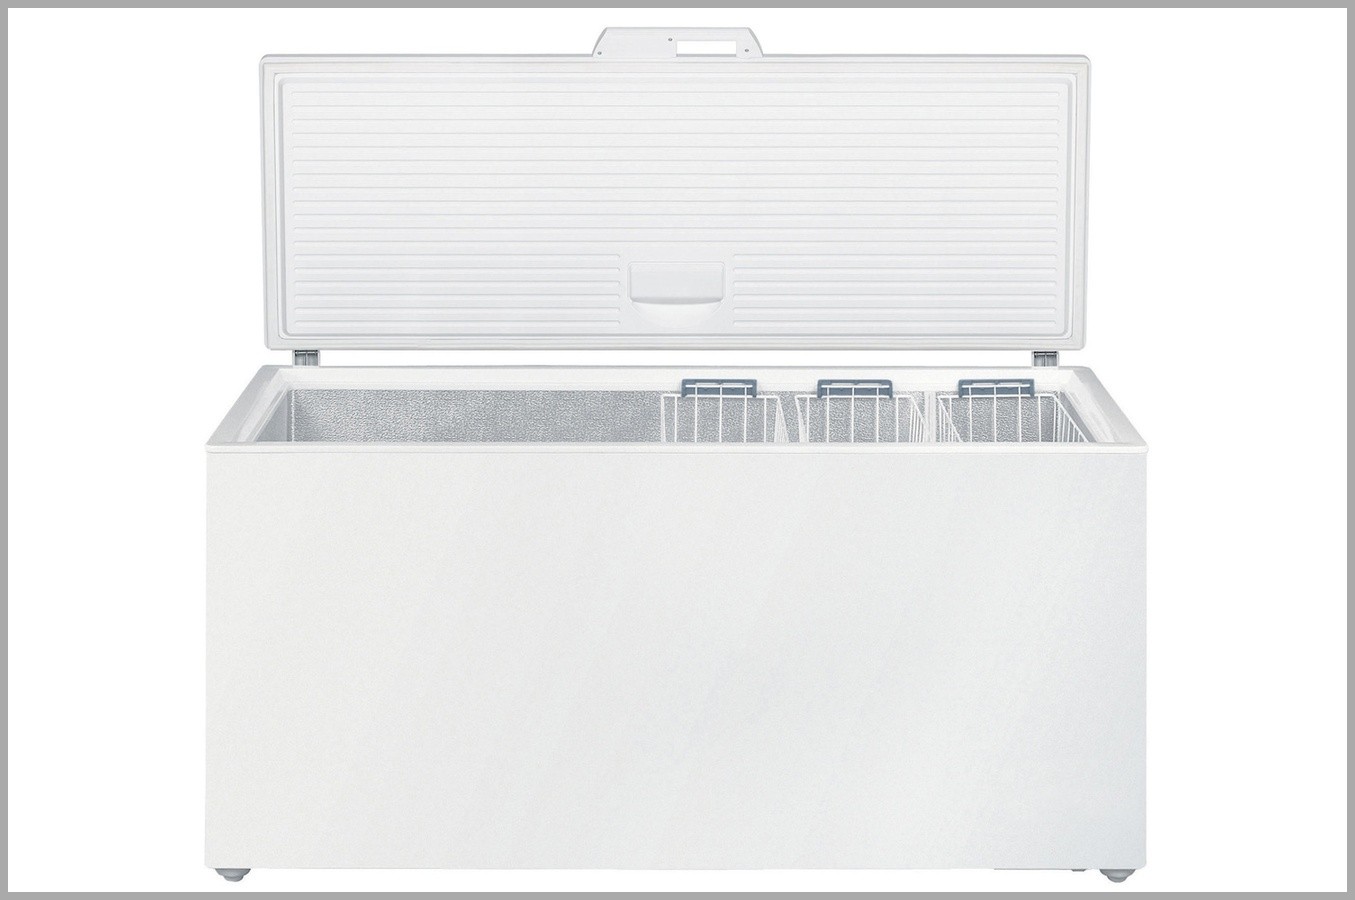 Solde congelateur armoire leclerc